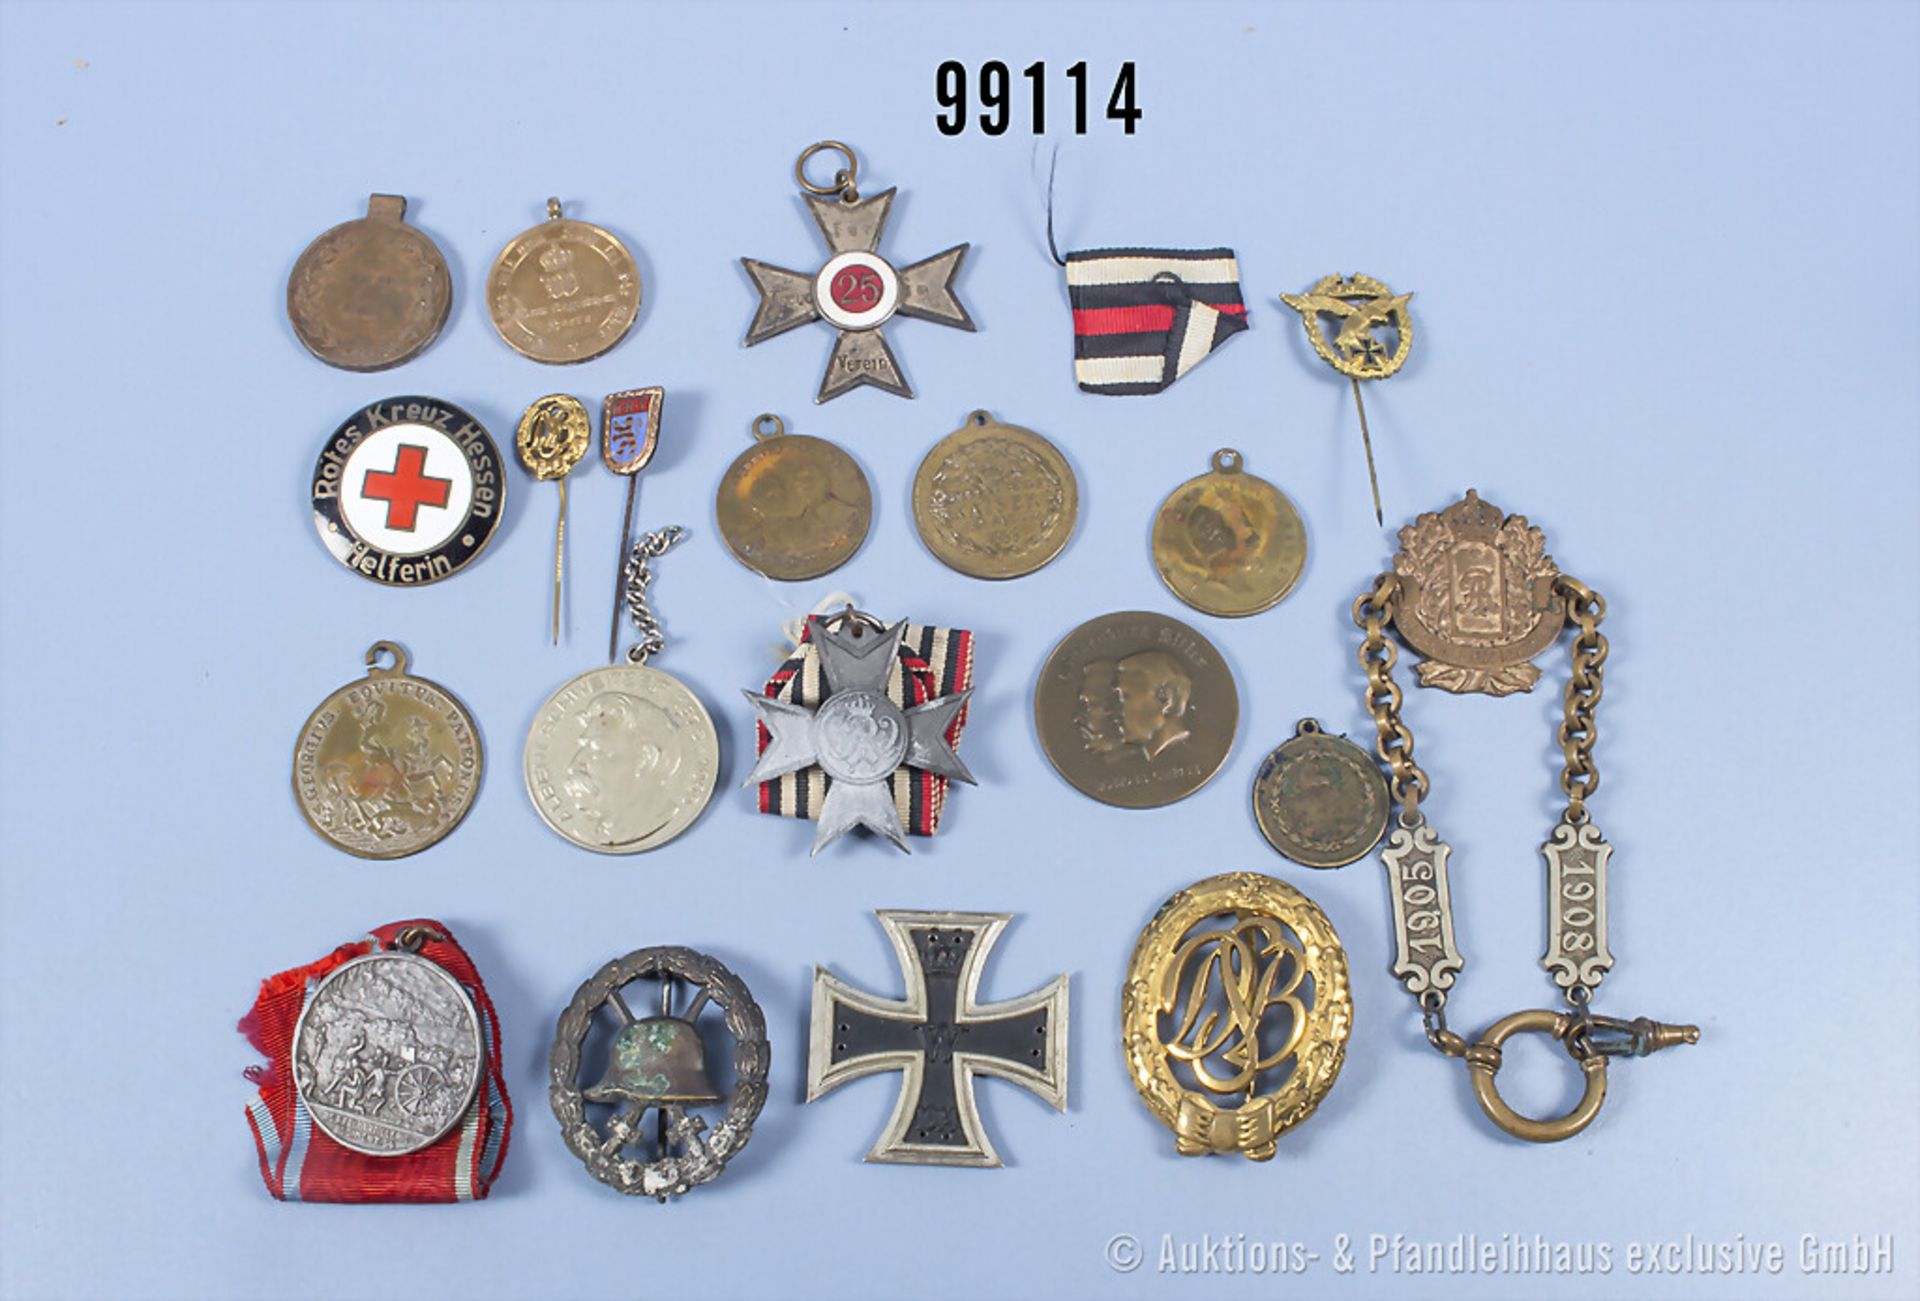 Konv. Orden, Abzeichen und Medaillen, versch. Epochen, teilweise stark beschädigt, ...